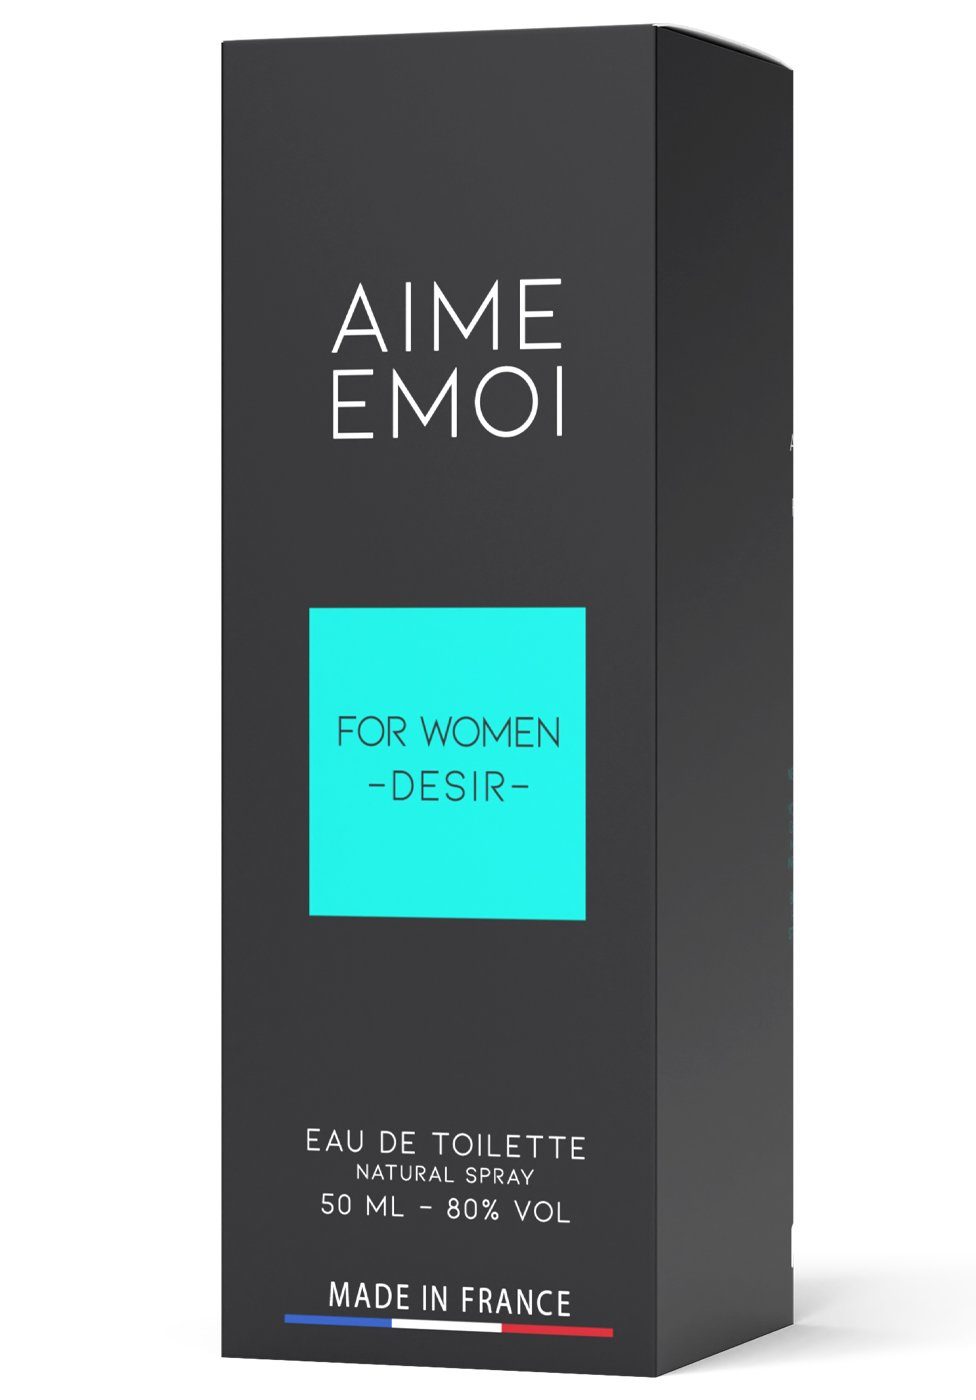 Ruf Eau Aime de Toilette Femme Emoi - Eau Parfum de Pour